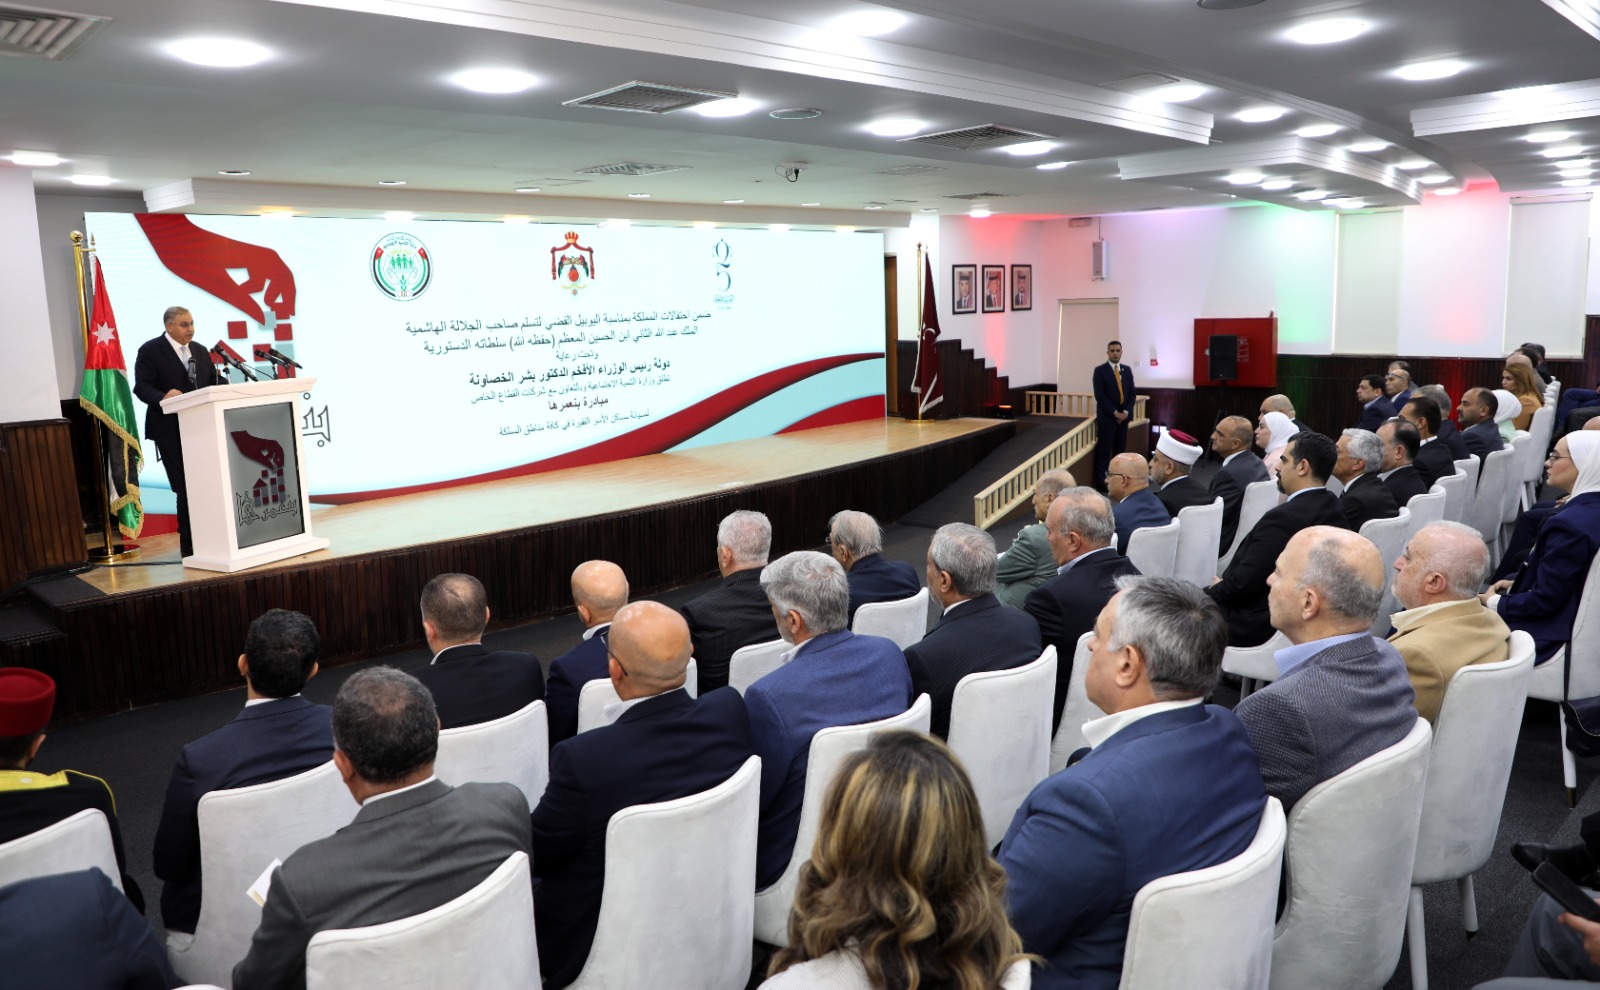 . أبو هديب : القطاع الخاص الأردني شريك استراتيجي للحكومة في مسيرة التقدم والبناء والتنمية المجتمعية